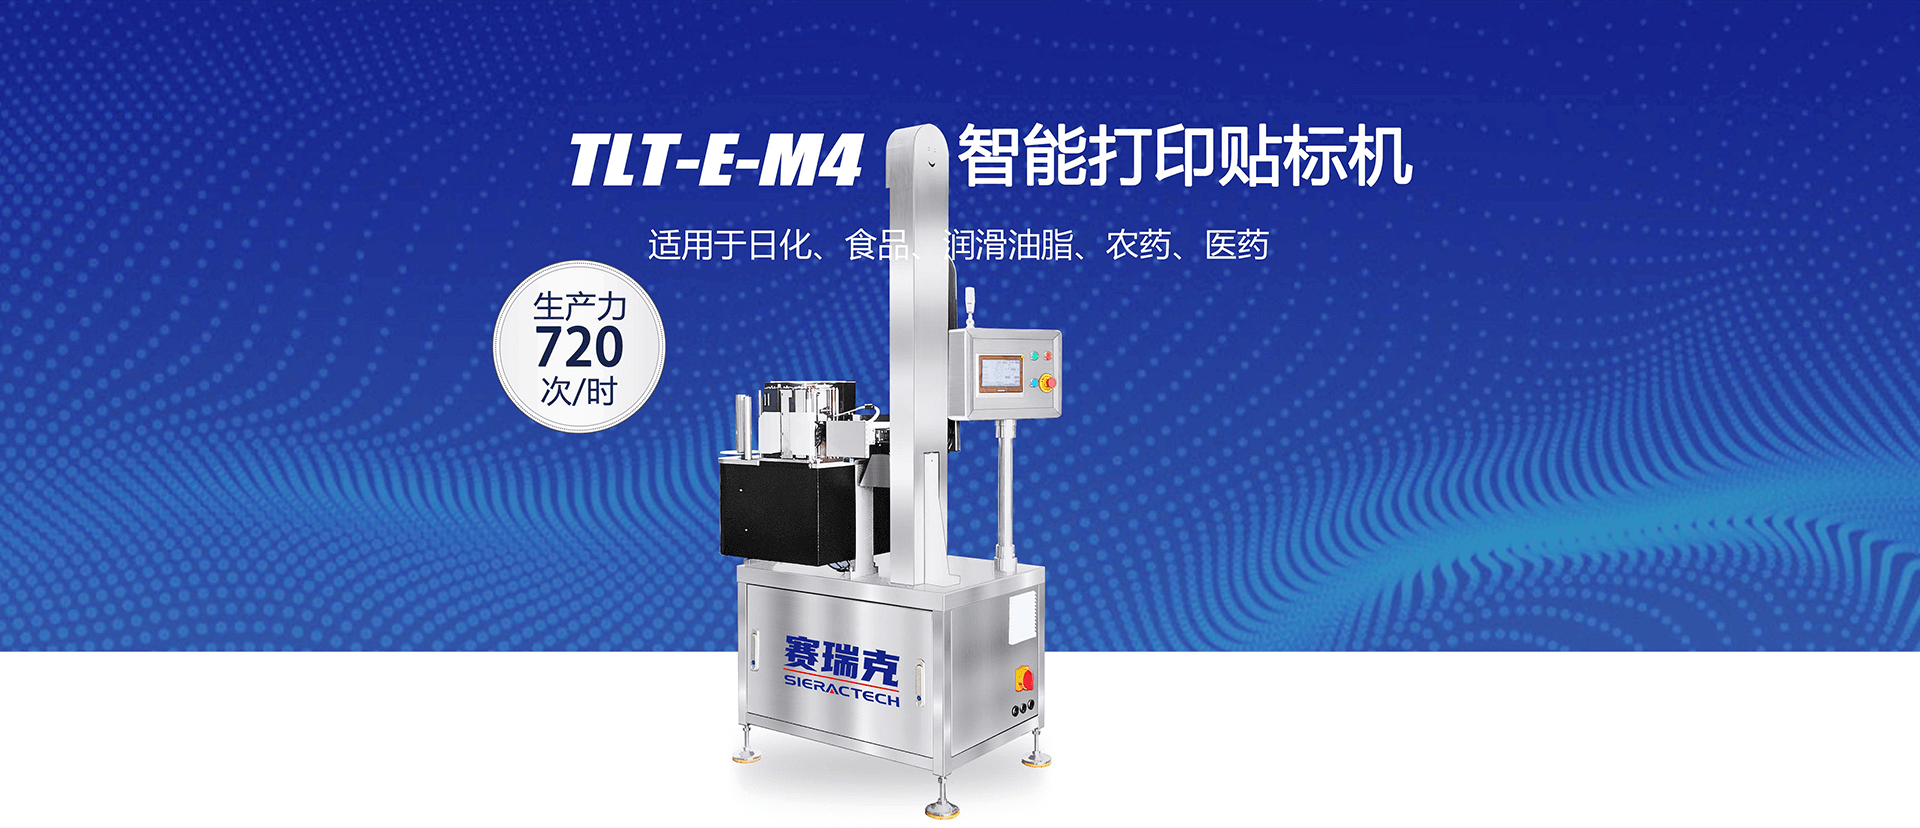 TLT-E-M4智能打印贴标机